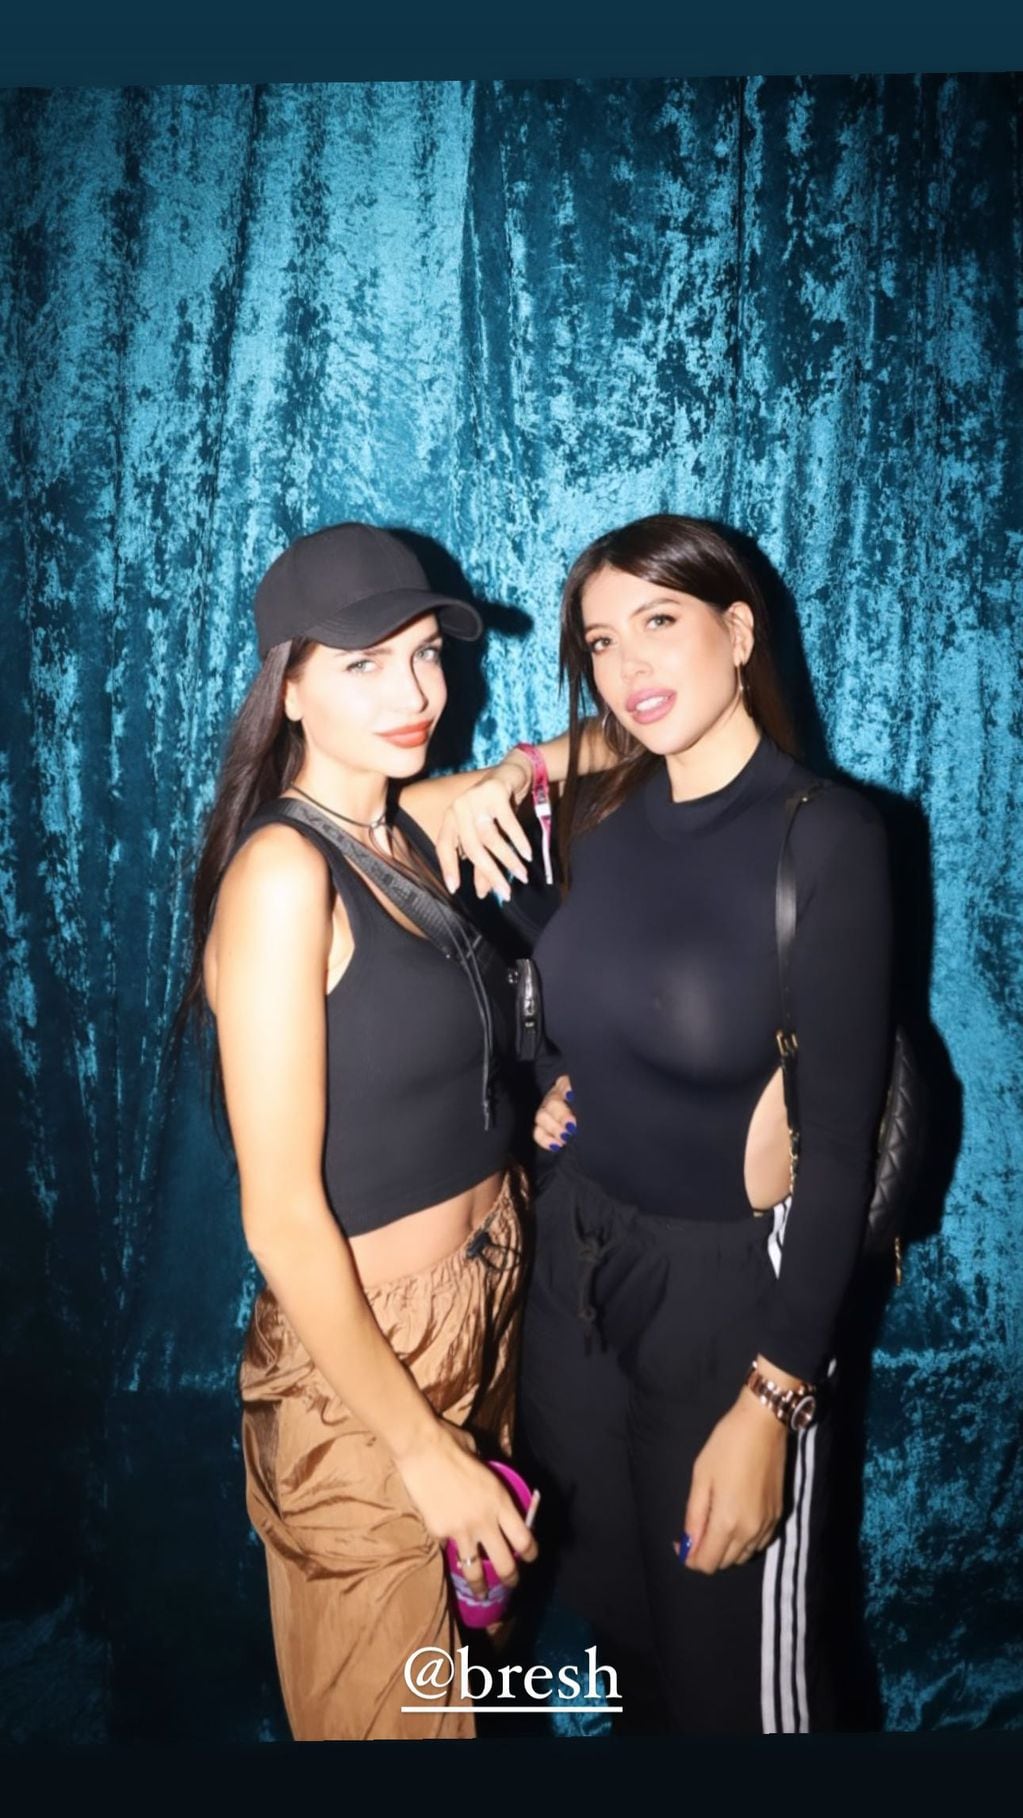 Las hermanas Nara asistieron a la fiesta 'Bresh' y deslumbraron con sus imponentes outfits / Foto: Instagram